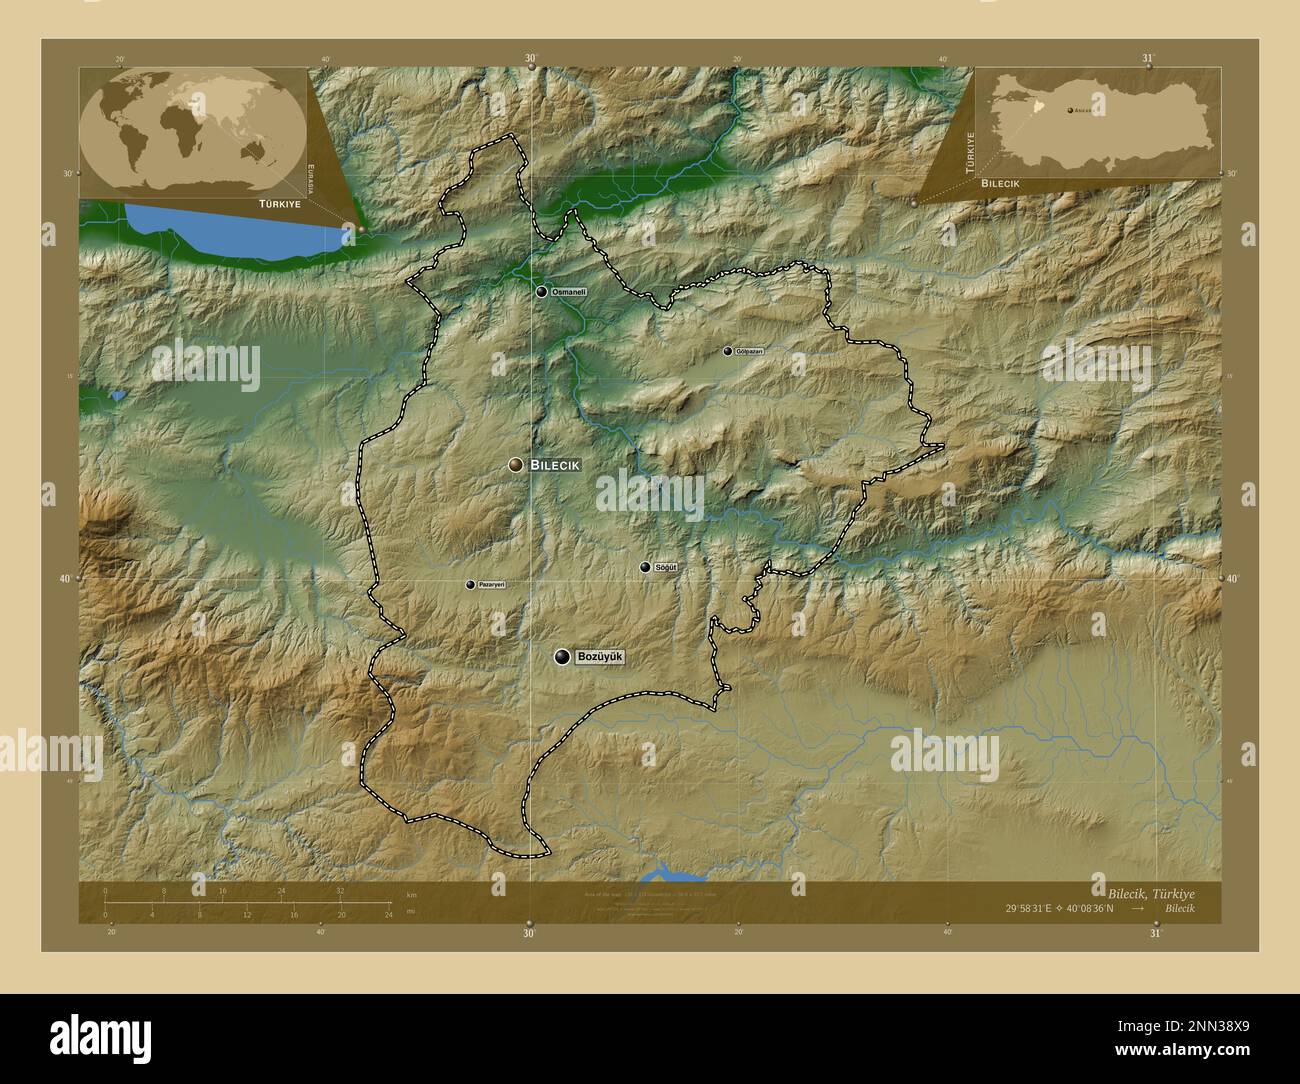 Bilecik, Provinz Turkiye. Farbige Höhenkarte mit Seen und Flüssen. Standorte und Namen der wichtigsten Städte der Region. Zusätzliche Lage in der Ecke Stockfoto